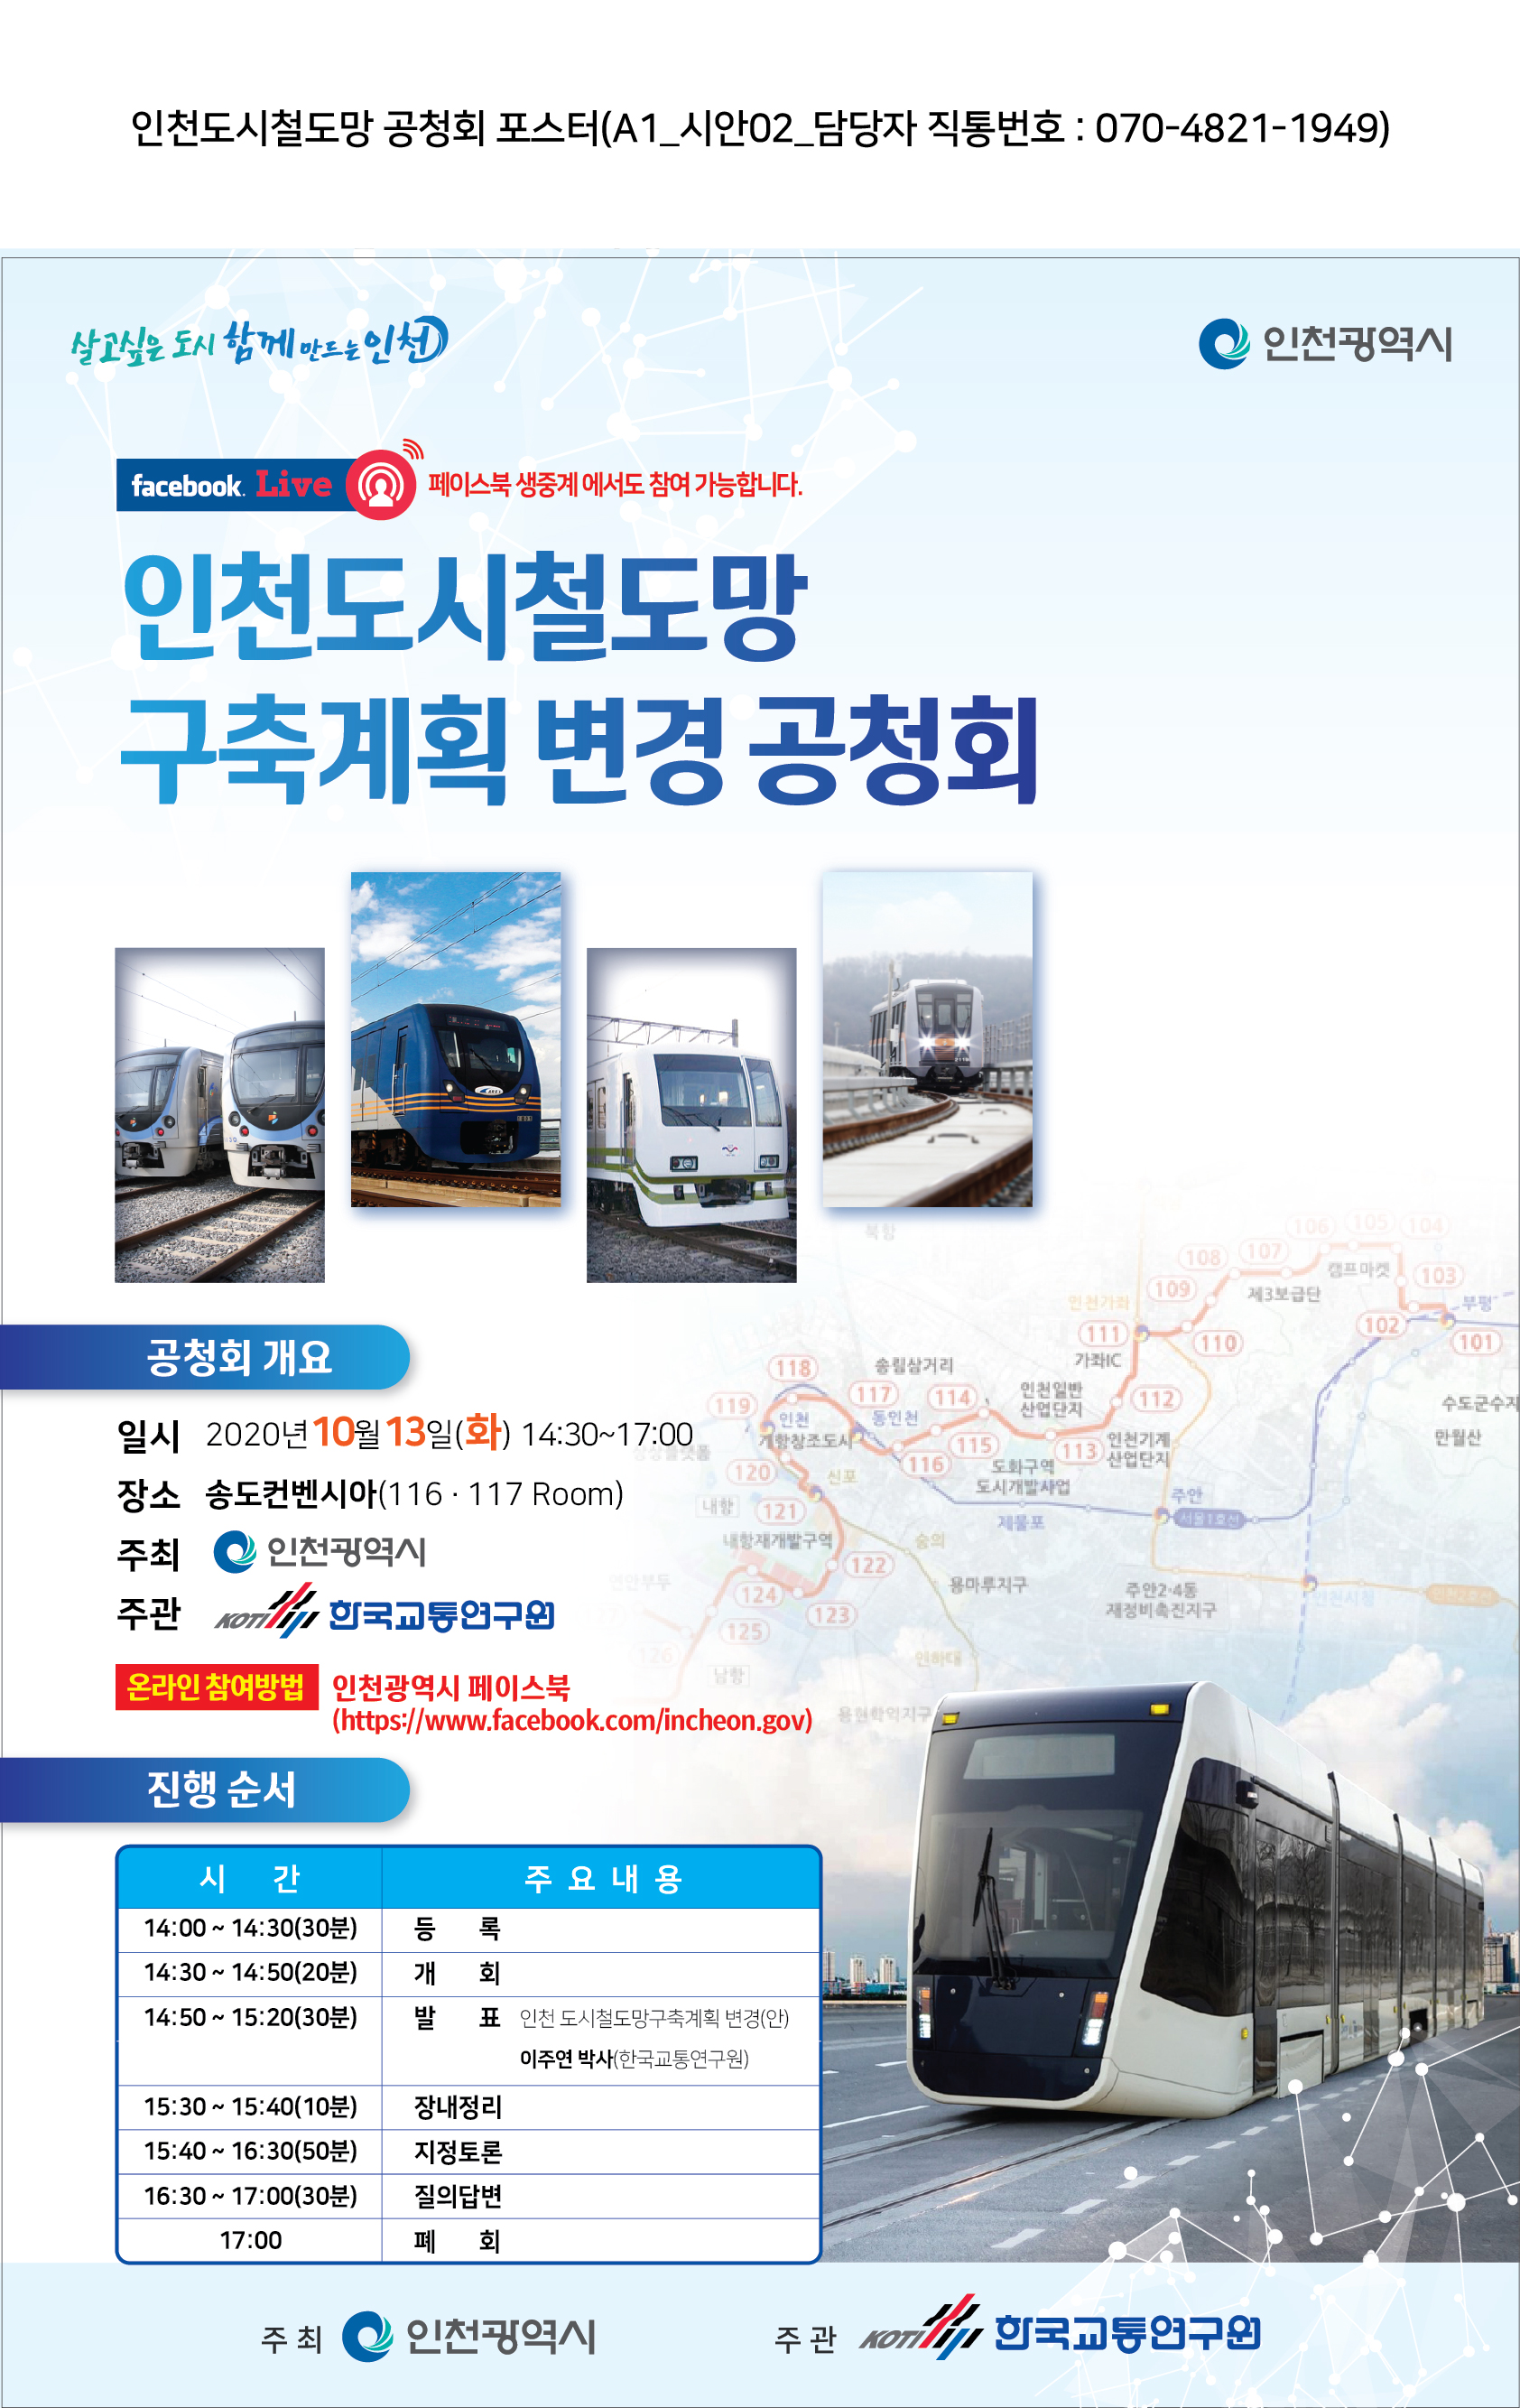 인천도시철도망 구축계획 변경 공청회의 1번째 이미지